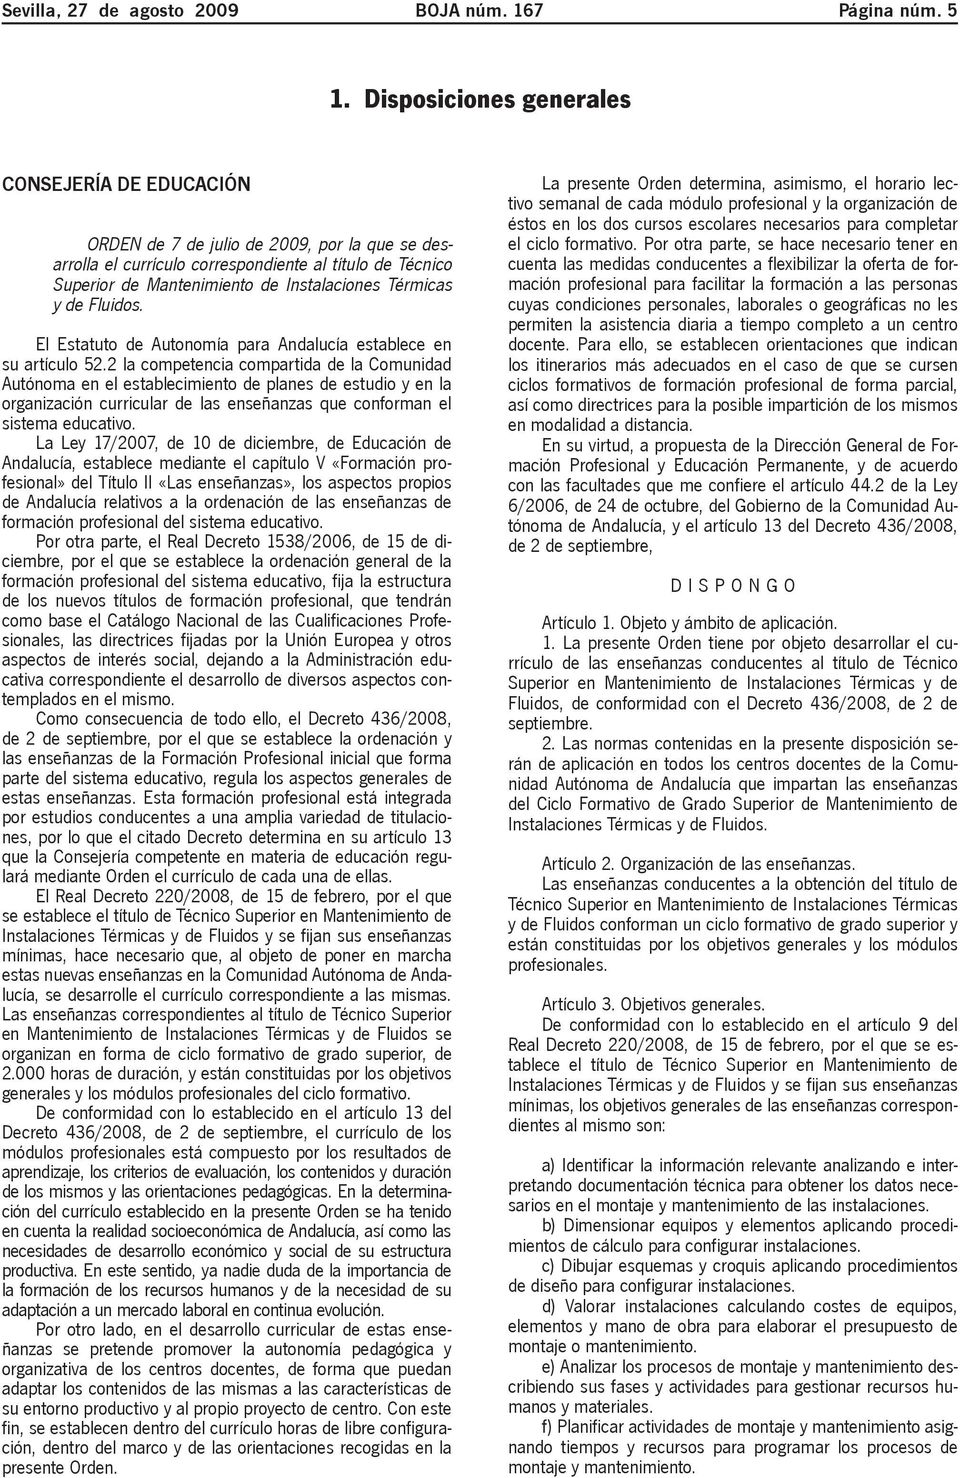 Térmicas y de Fluidos. El Estatuto de Autonomía para Andalucía establece en su artículo 52.